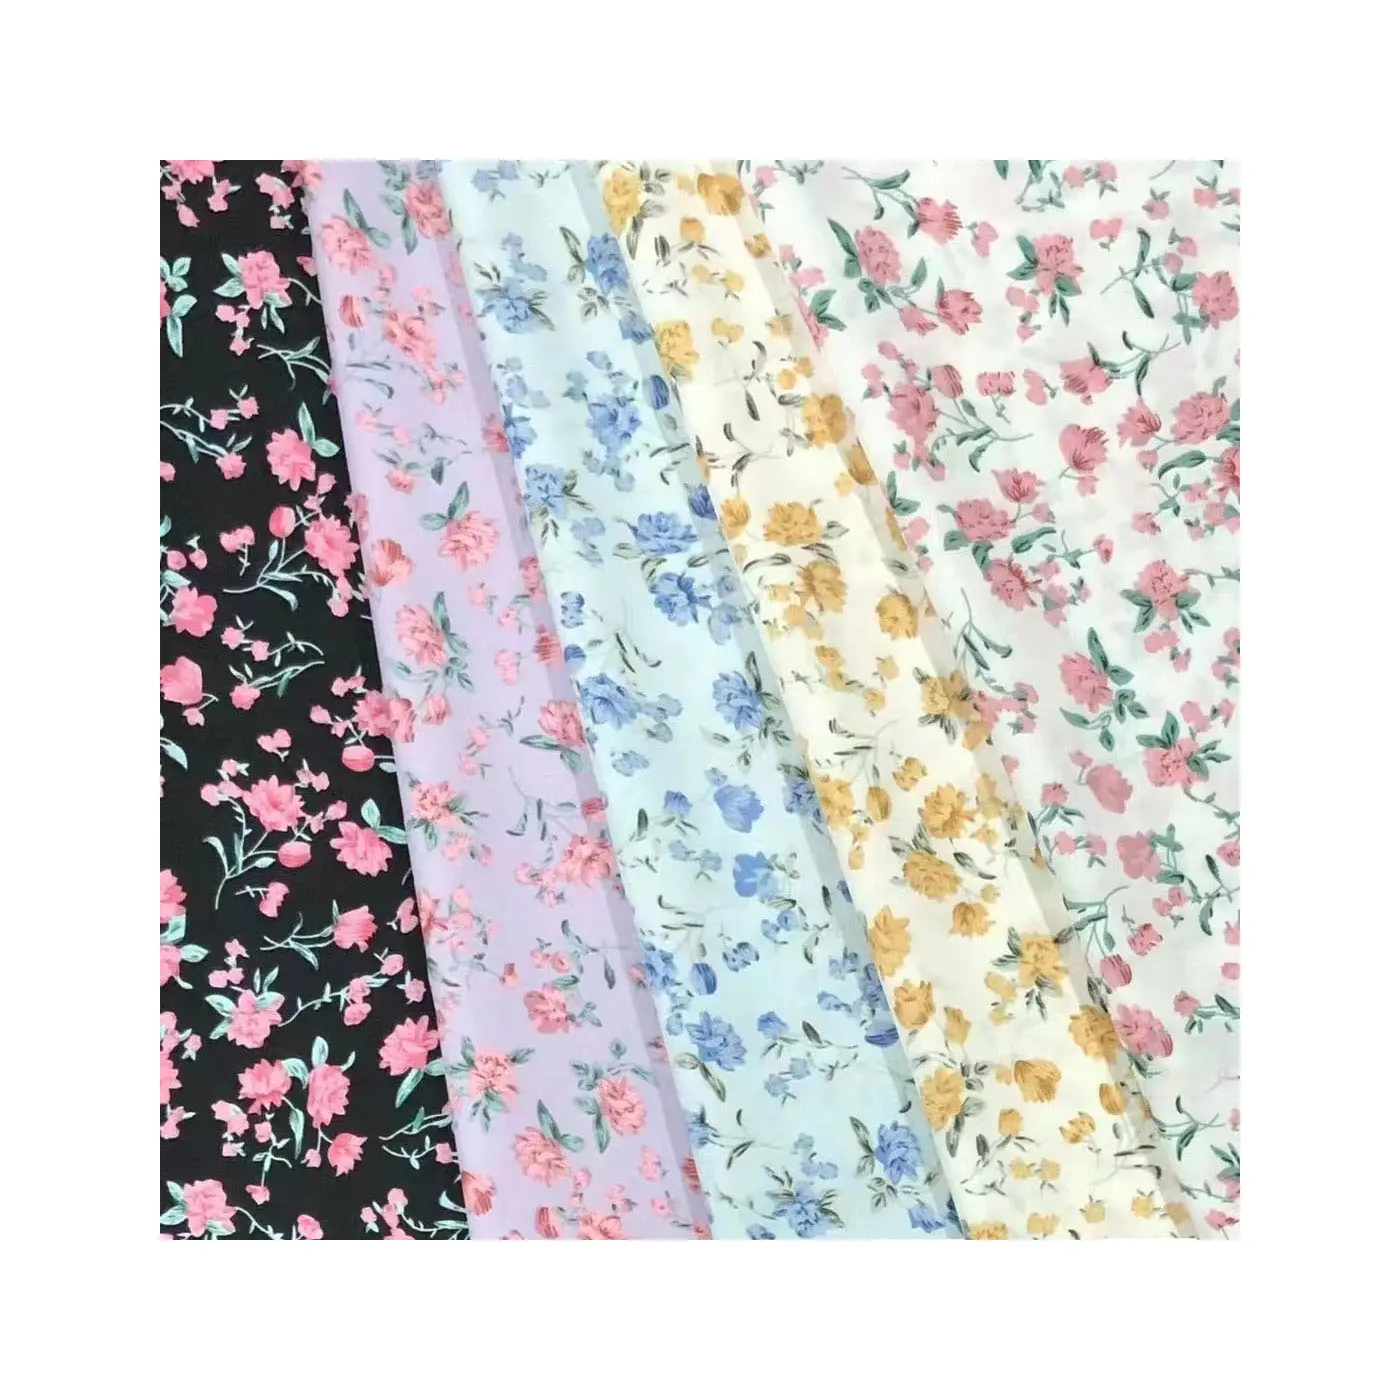 Großhandel billigste bequeme modische Blumenmuster Polyester Chiffon Stoff für Frauen Sommerkleid ung gedruckt